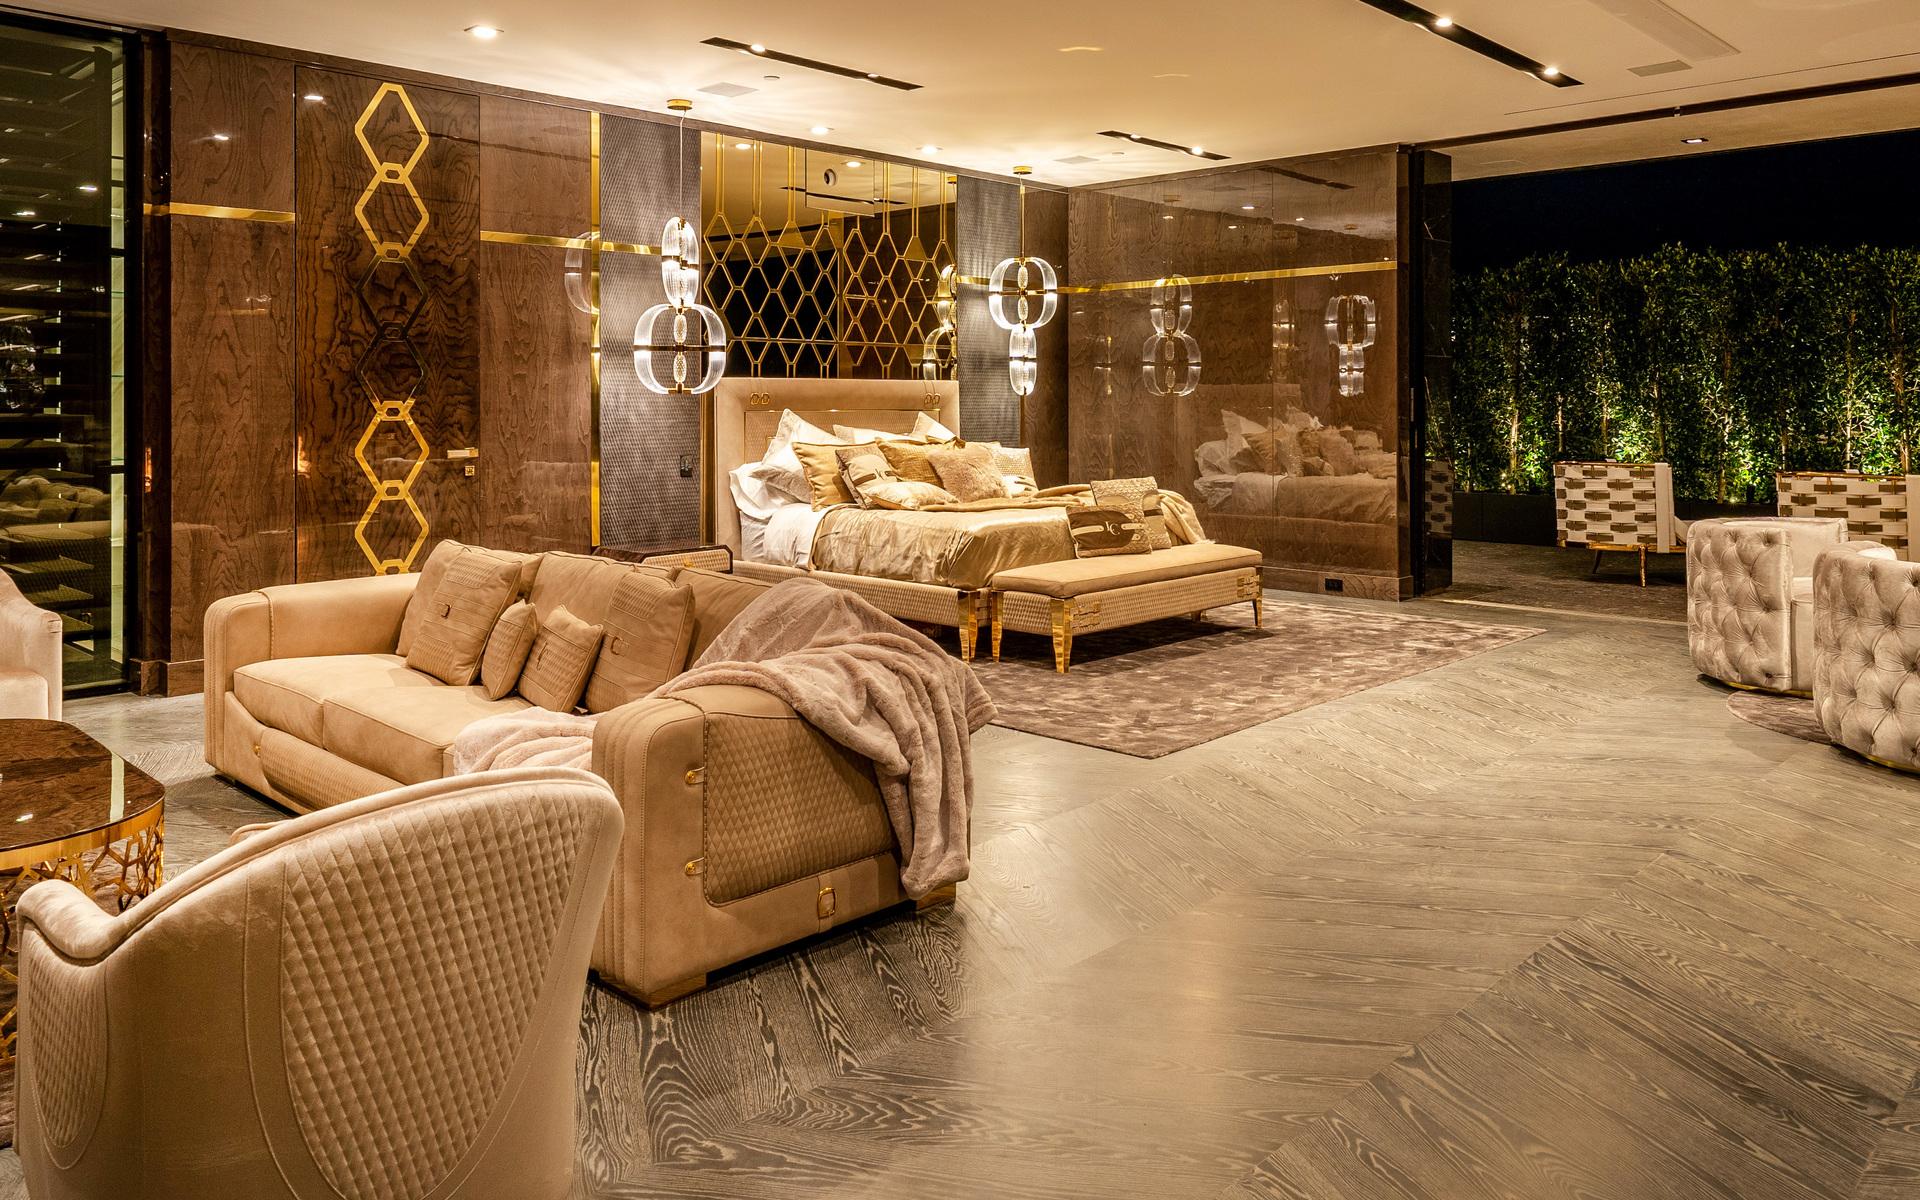 The master-suite har fått ekgolv- och väggar från Italien. Även det här rummet har inretts i trä, brunt och guld.